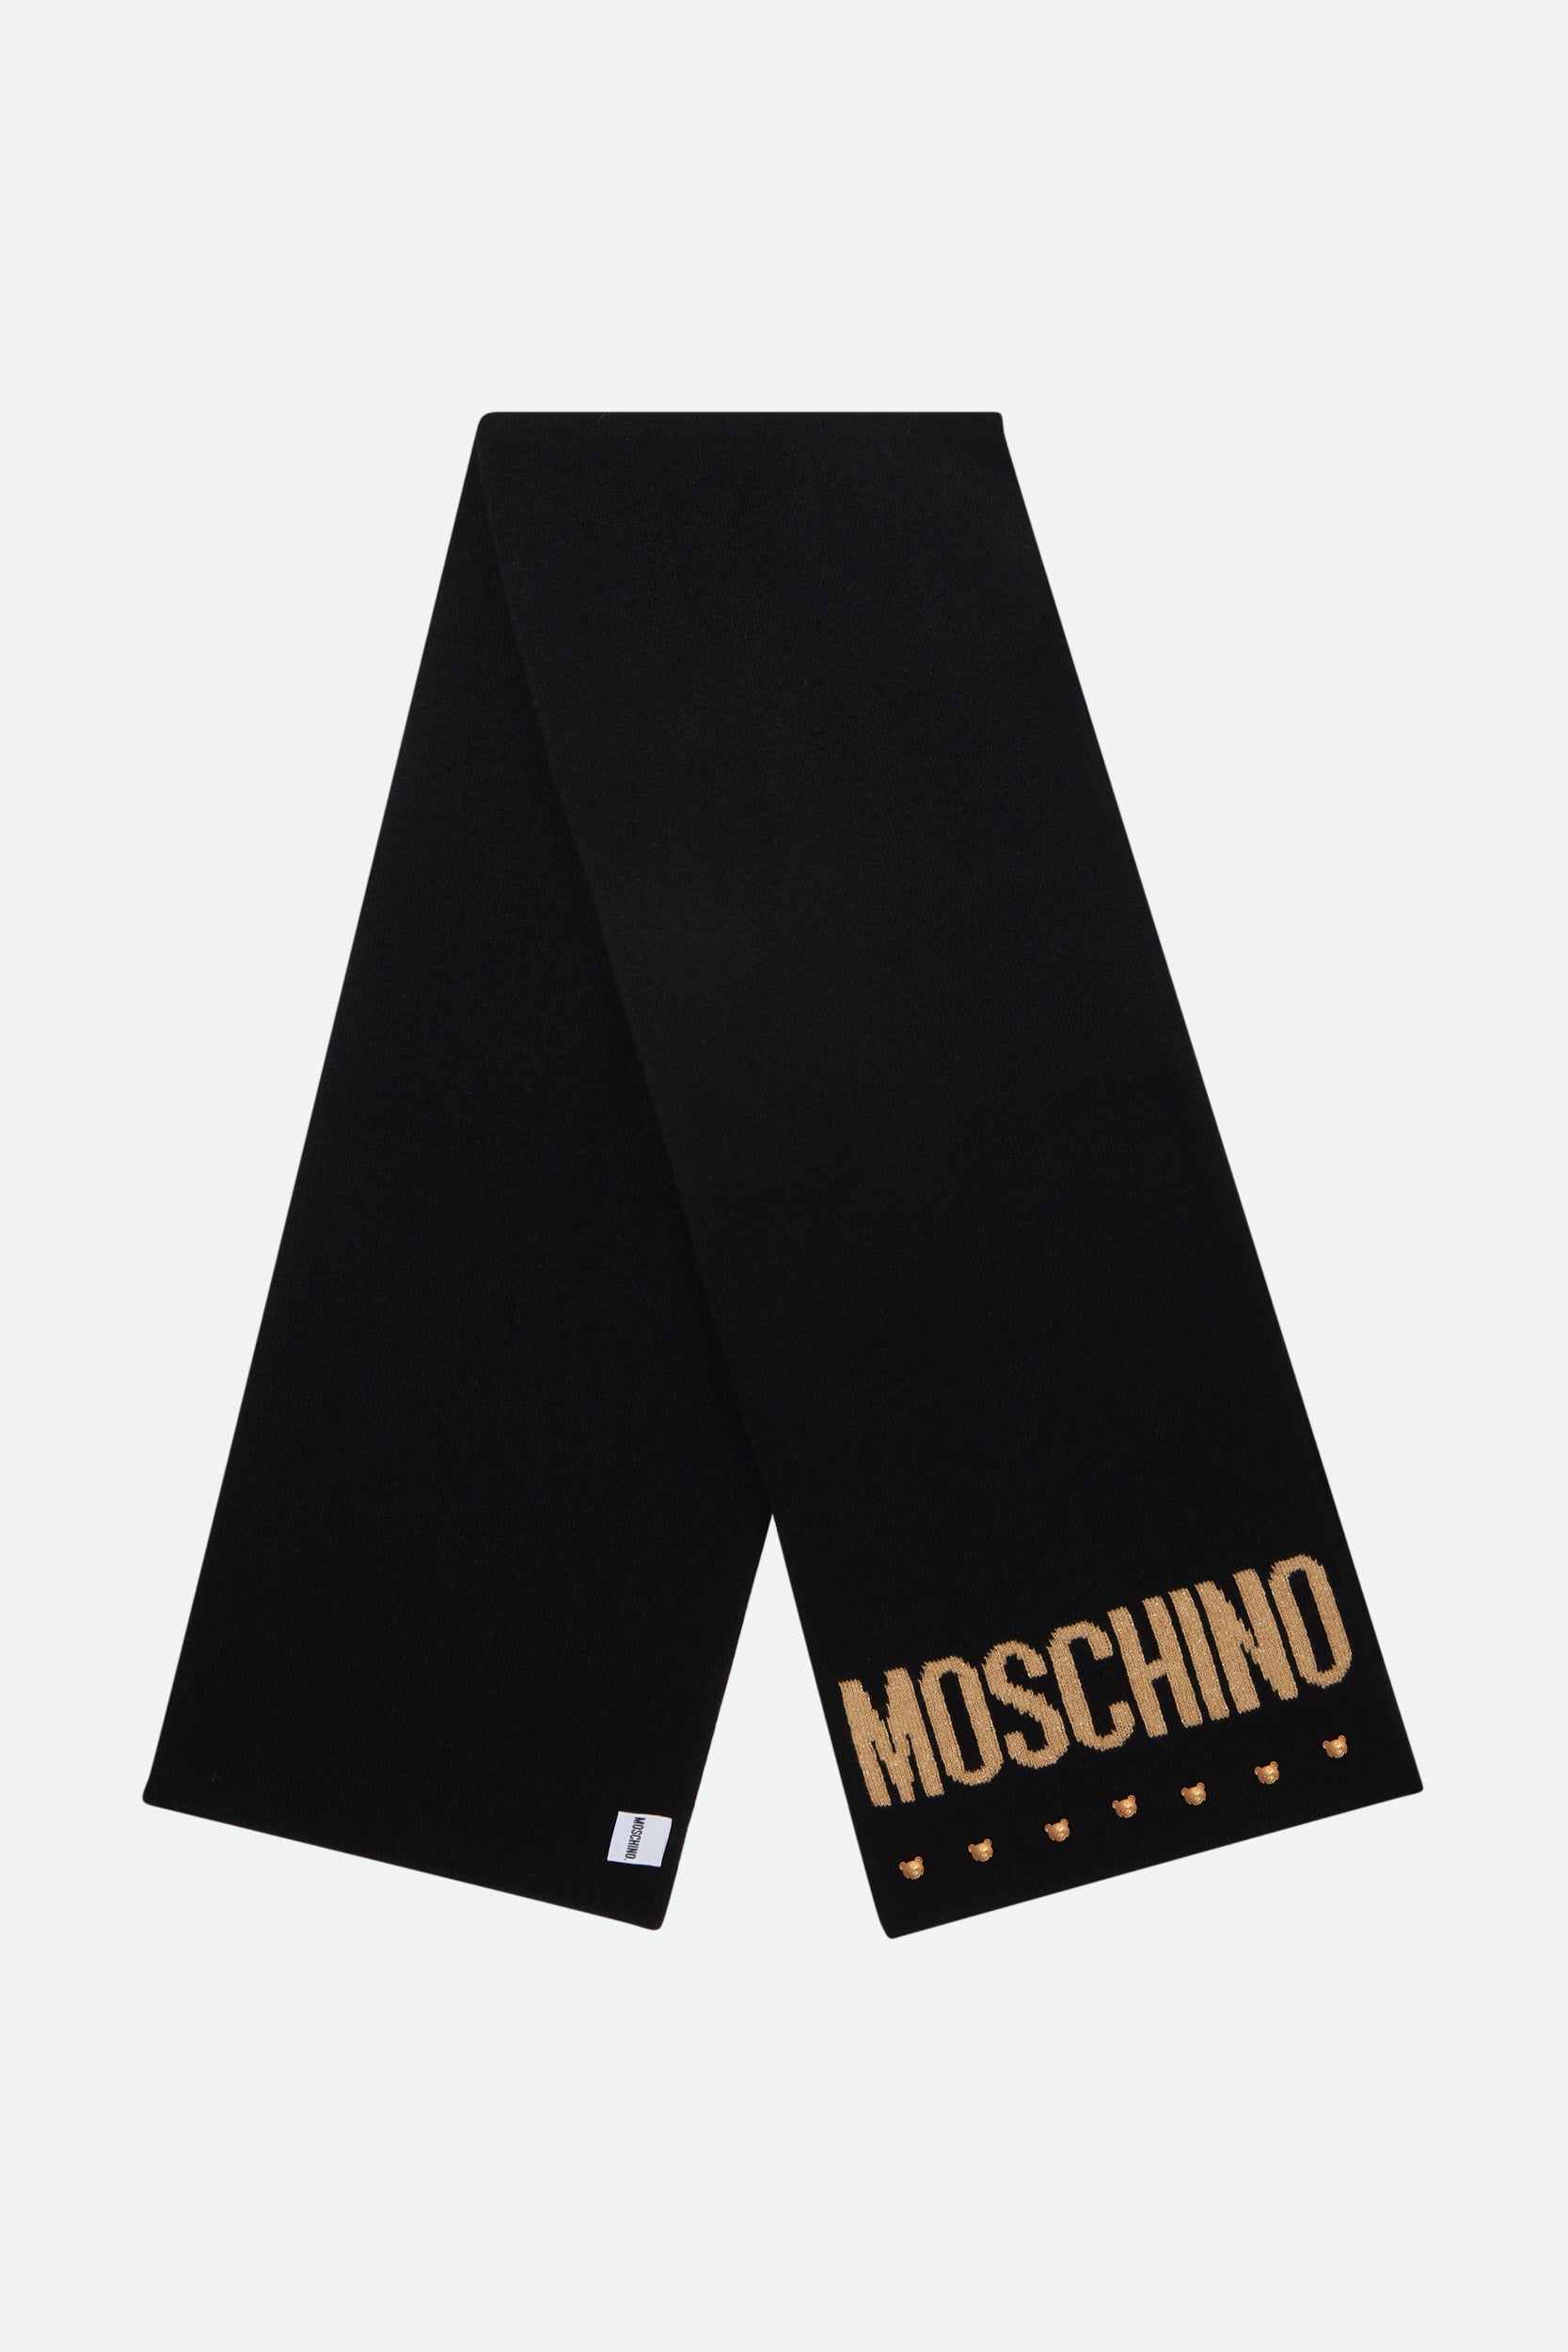 Moschino schwarzer Wollschal